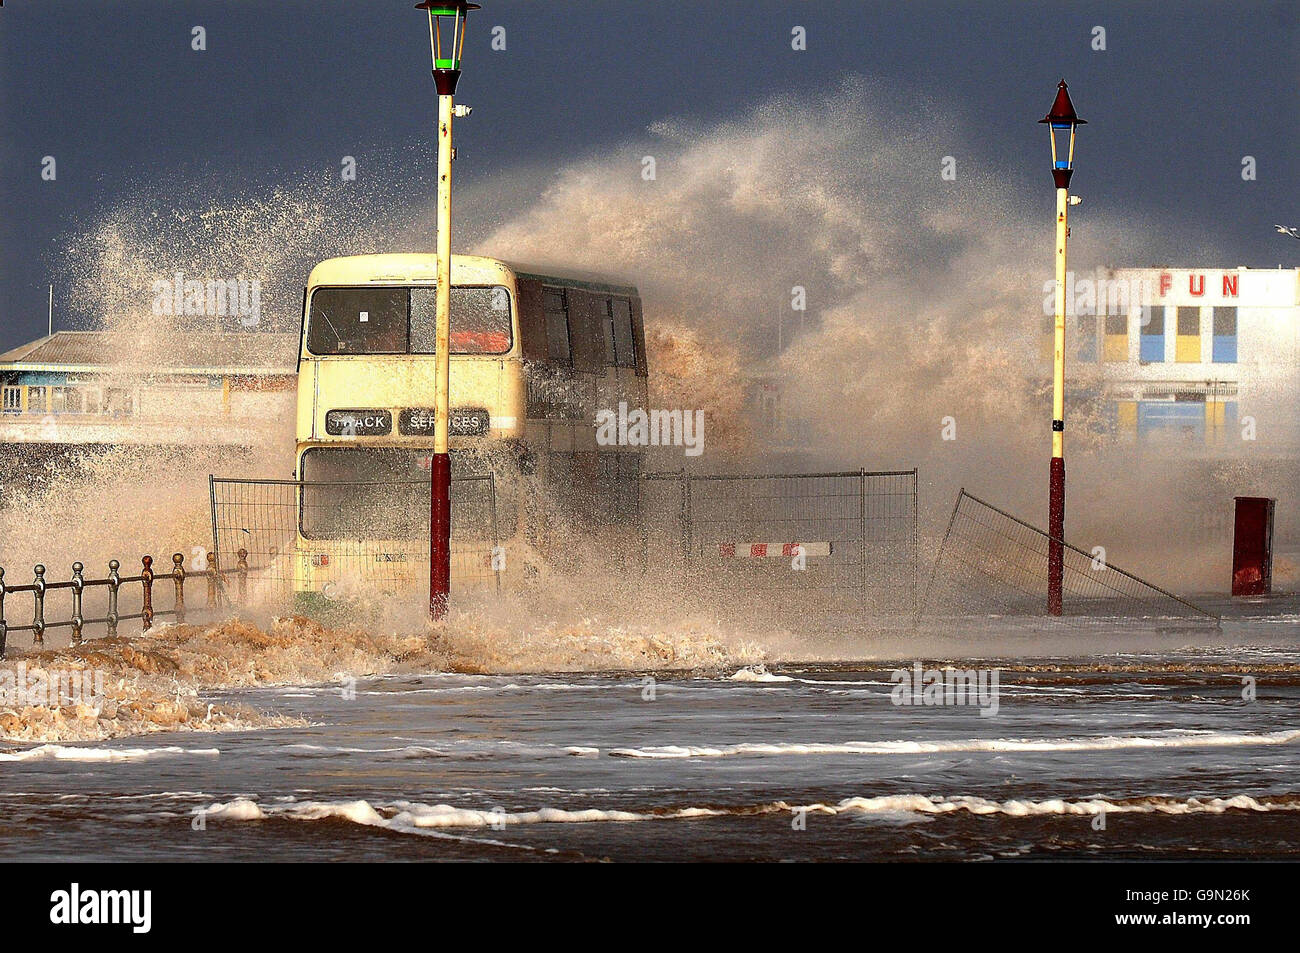 Ein Bus auf der Blackpool Promenade wird von einer Welle umschlungen, während Sturmwind und hohe See die Westküste Englands umschlingen. Stockfoto